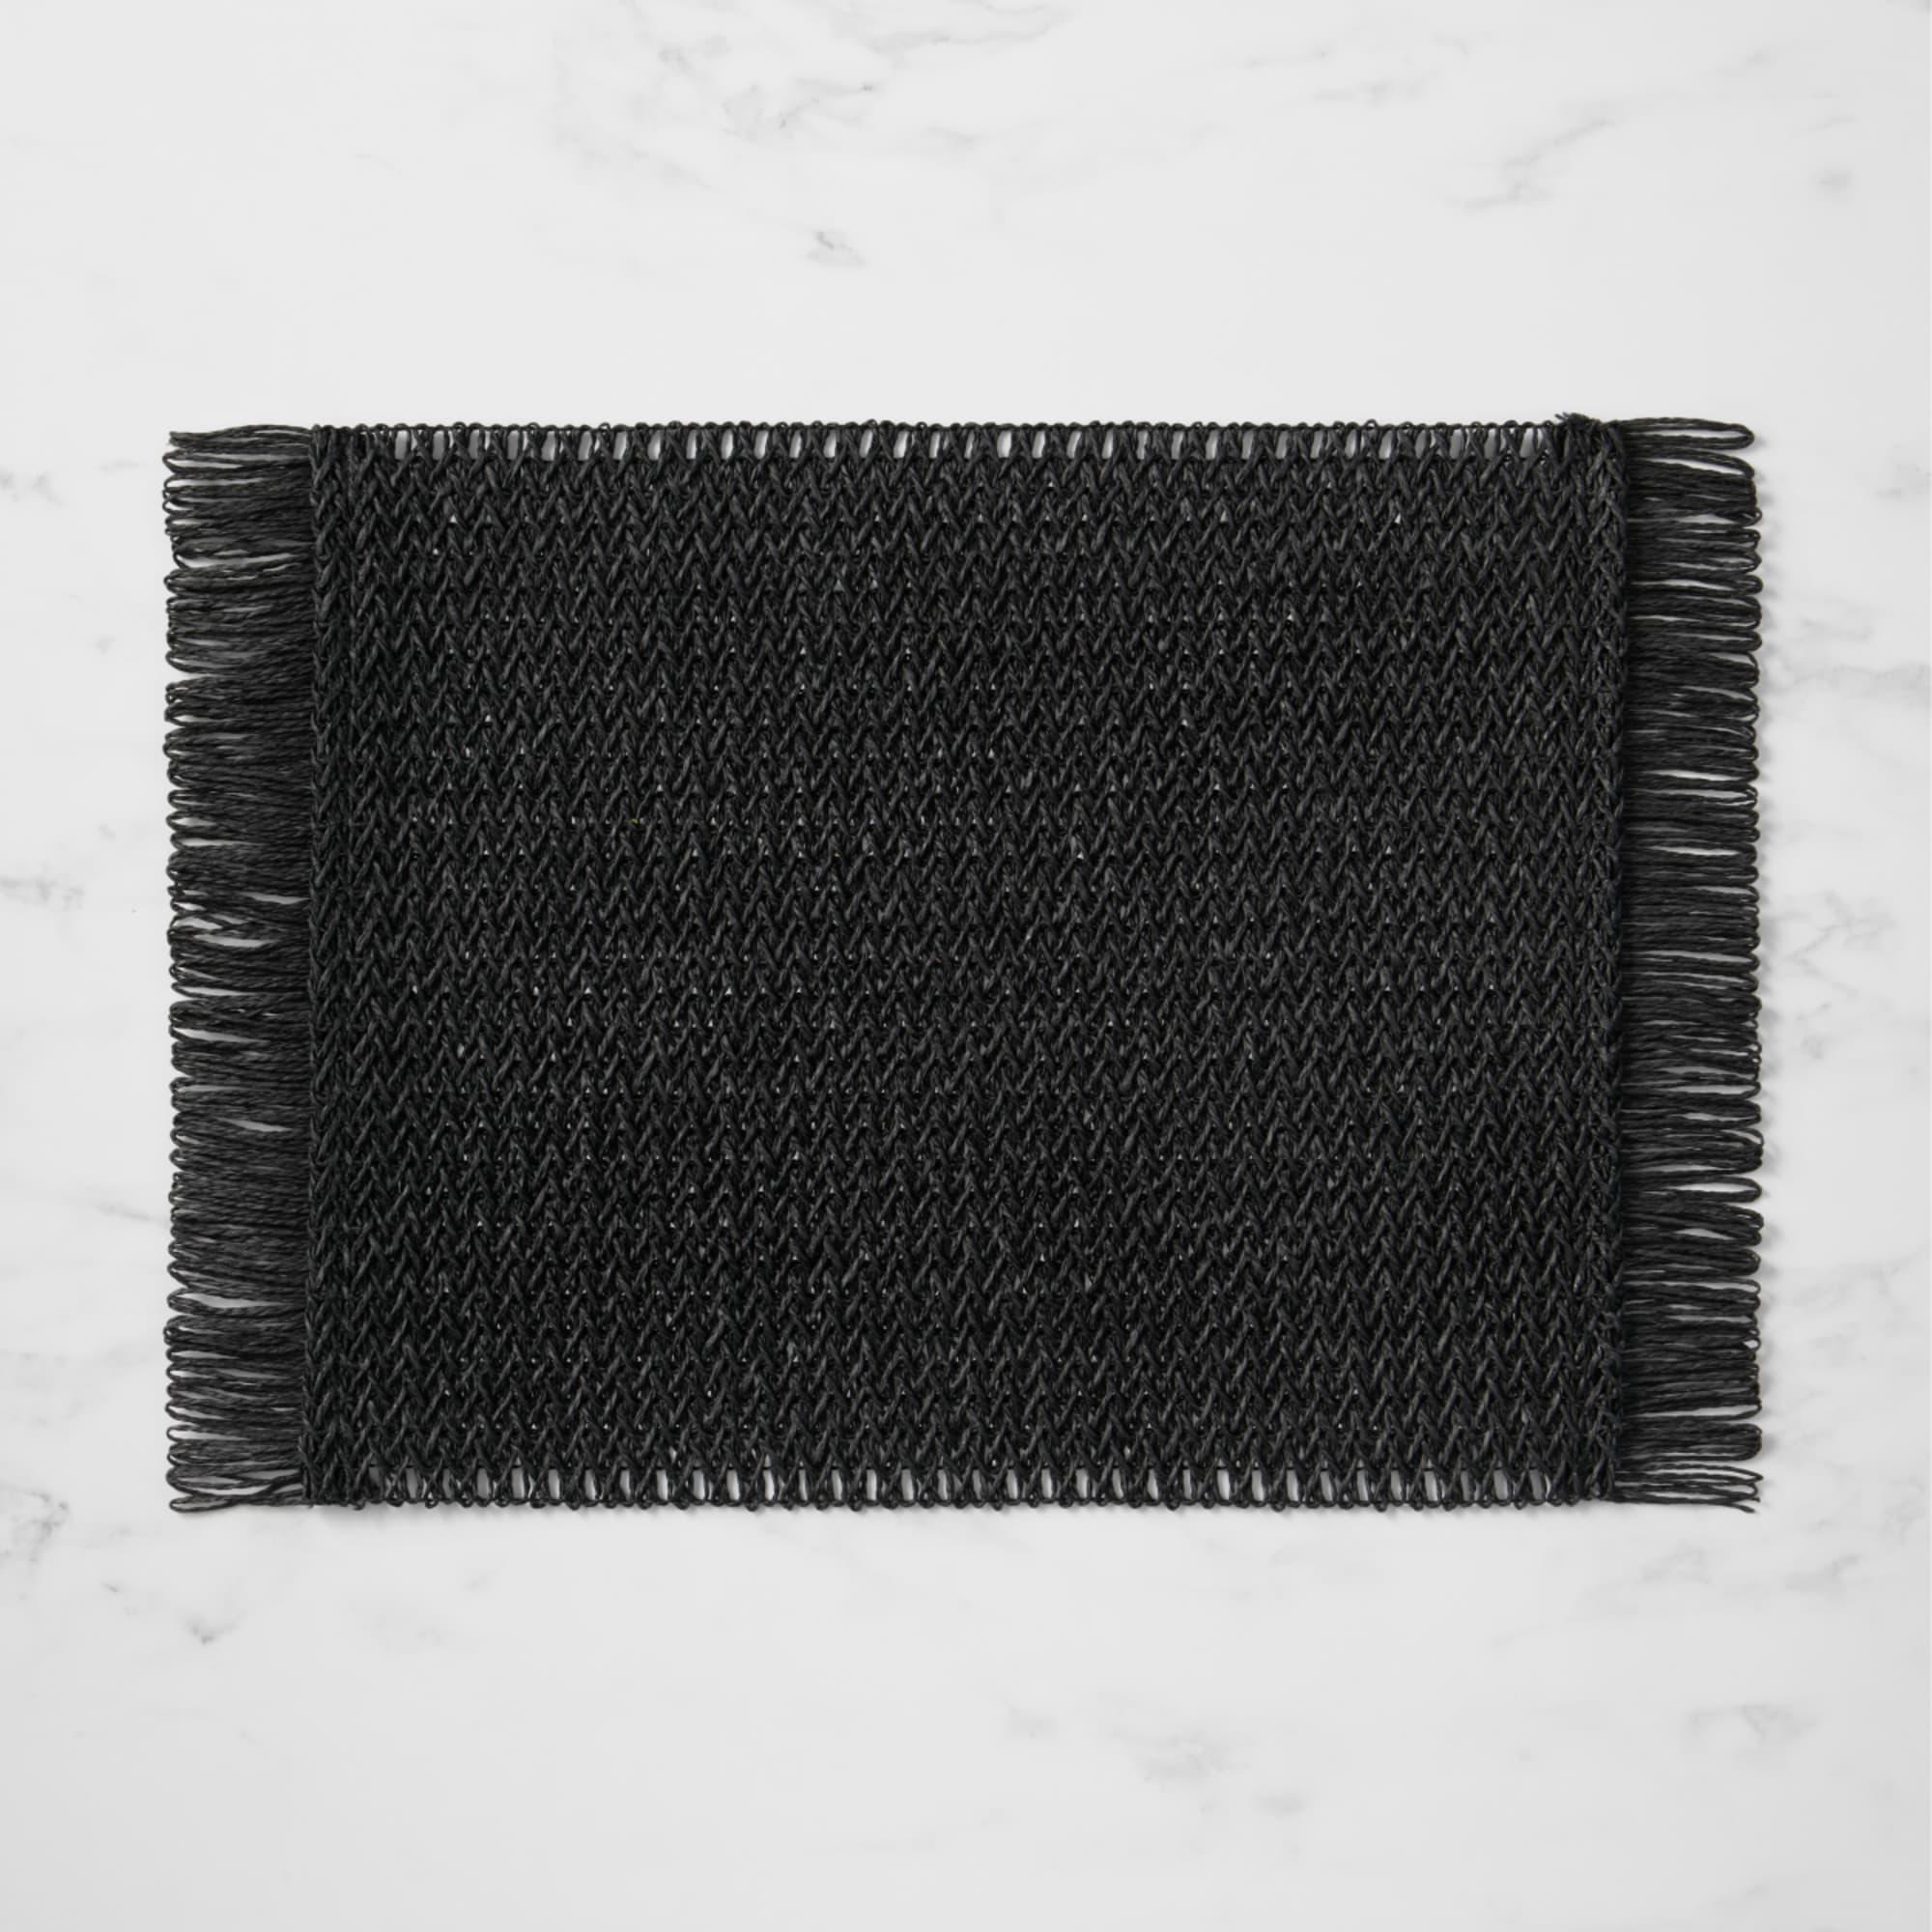 Salisbury & Co Fringe Rectangular Placemat 45x30cm Black Image 1